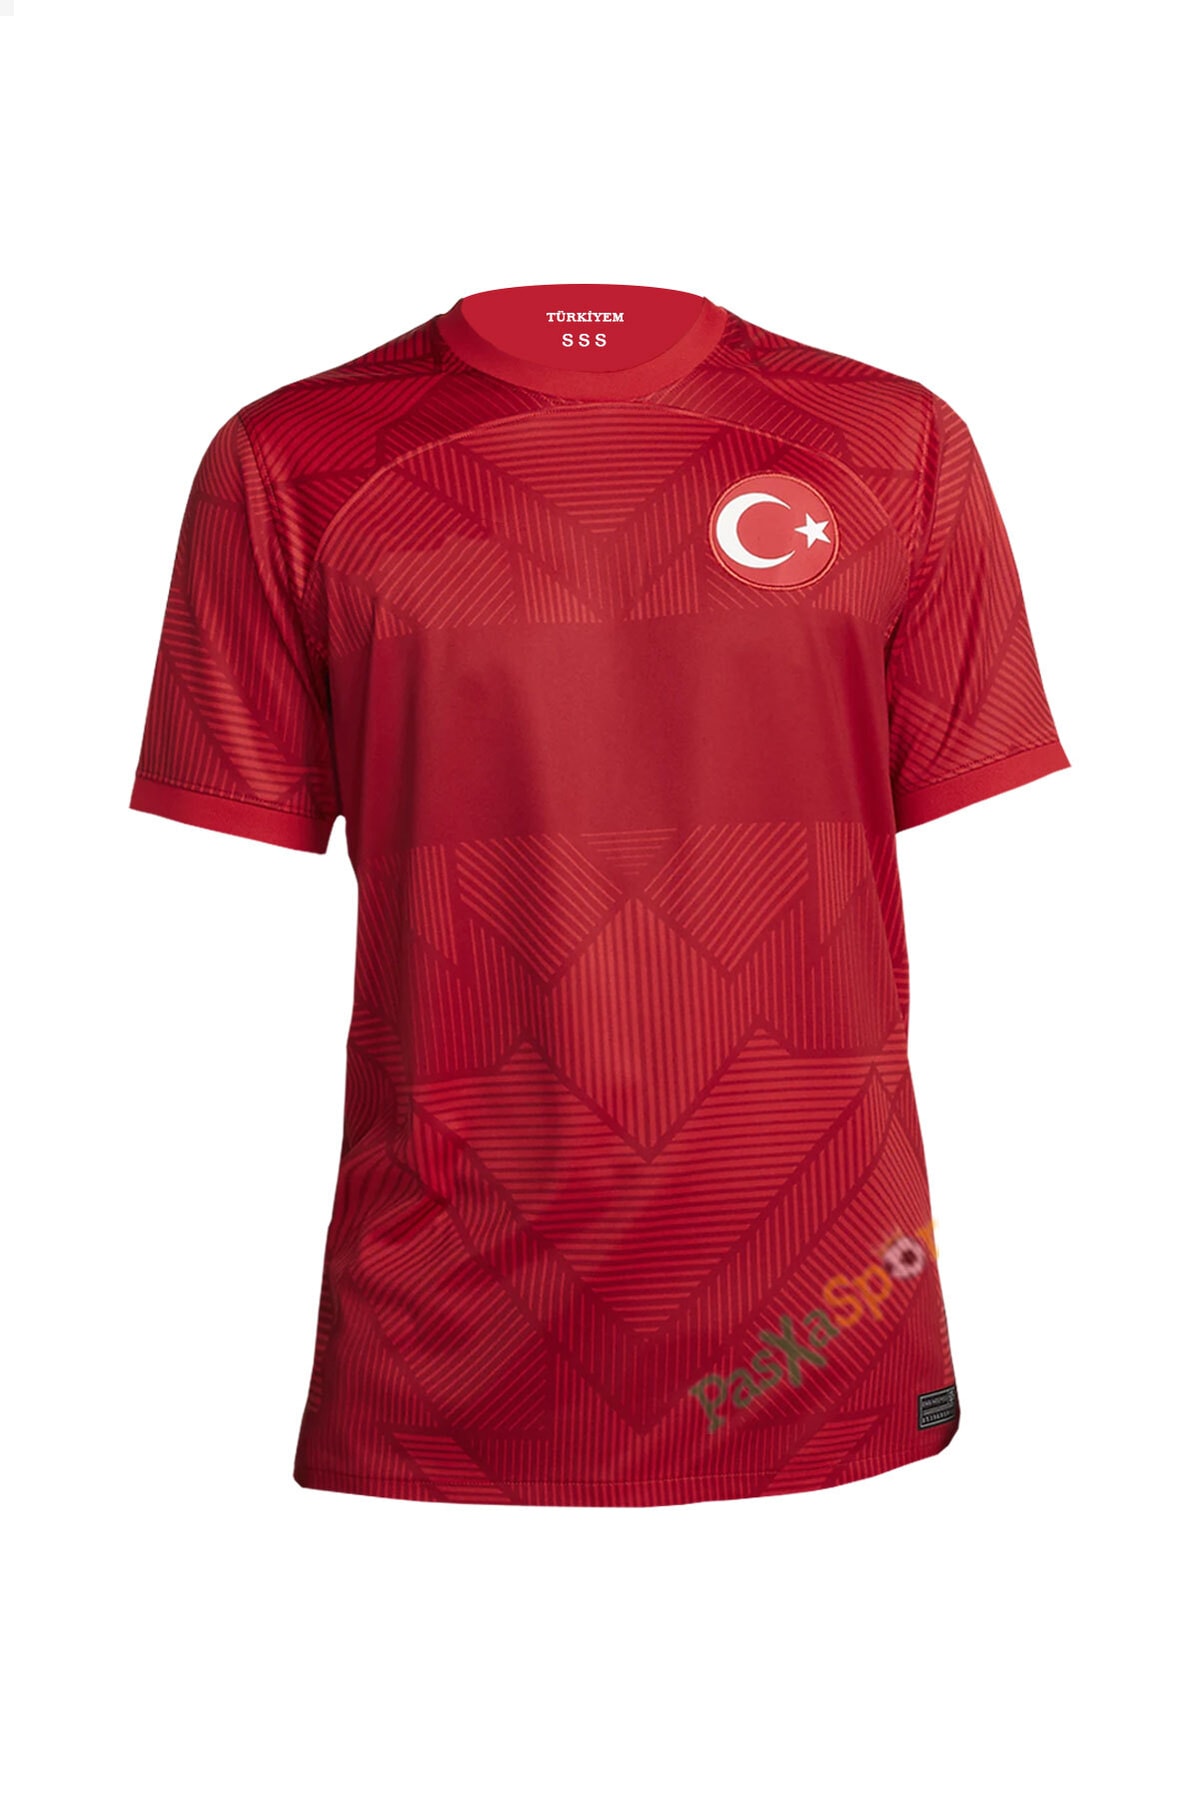 Pasxaspor Yeni Sezon Türkiye Kırmızı Maç Forması